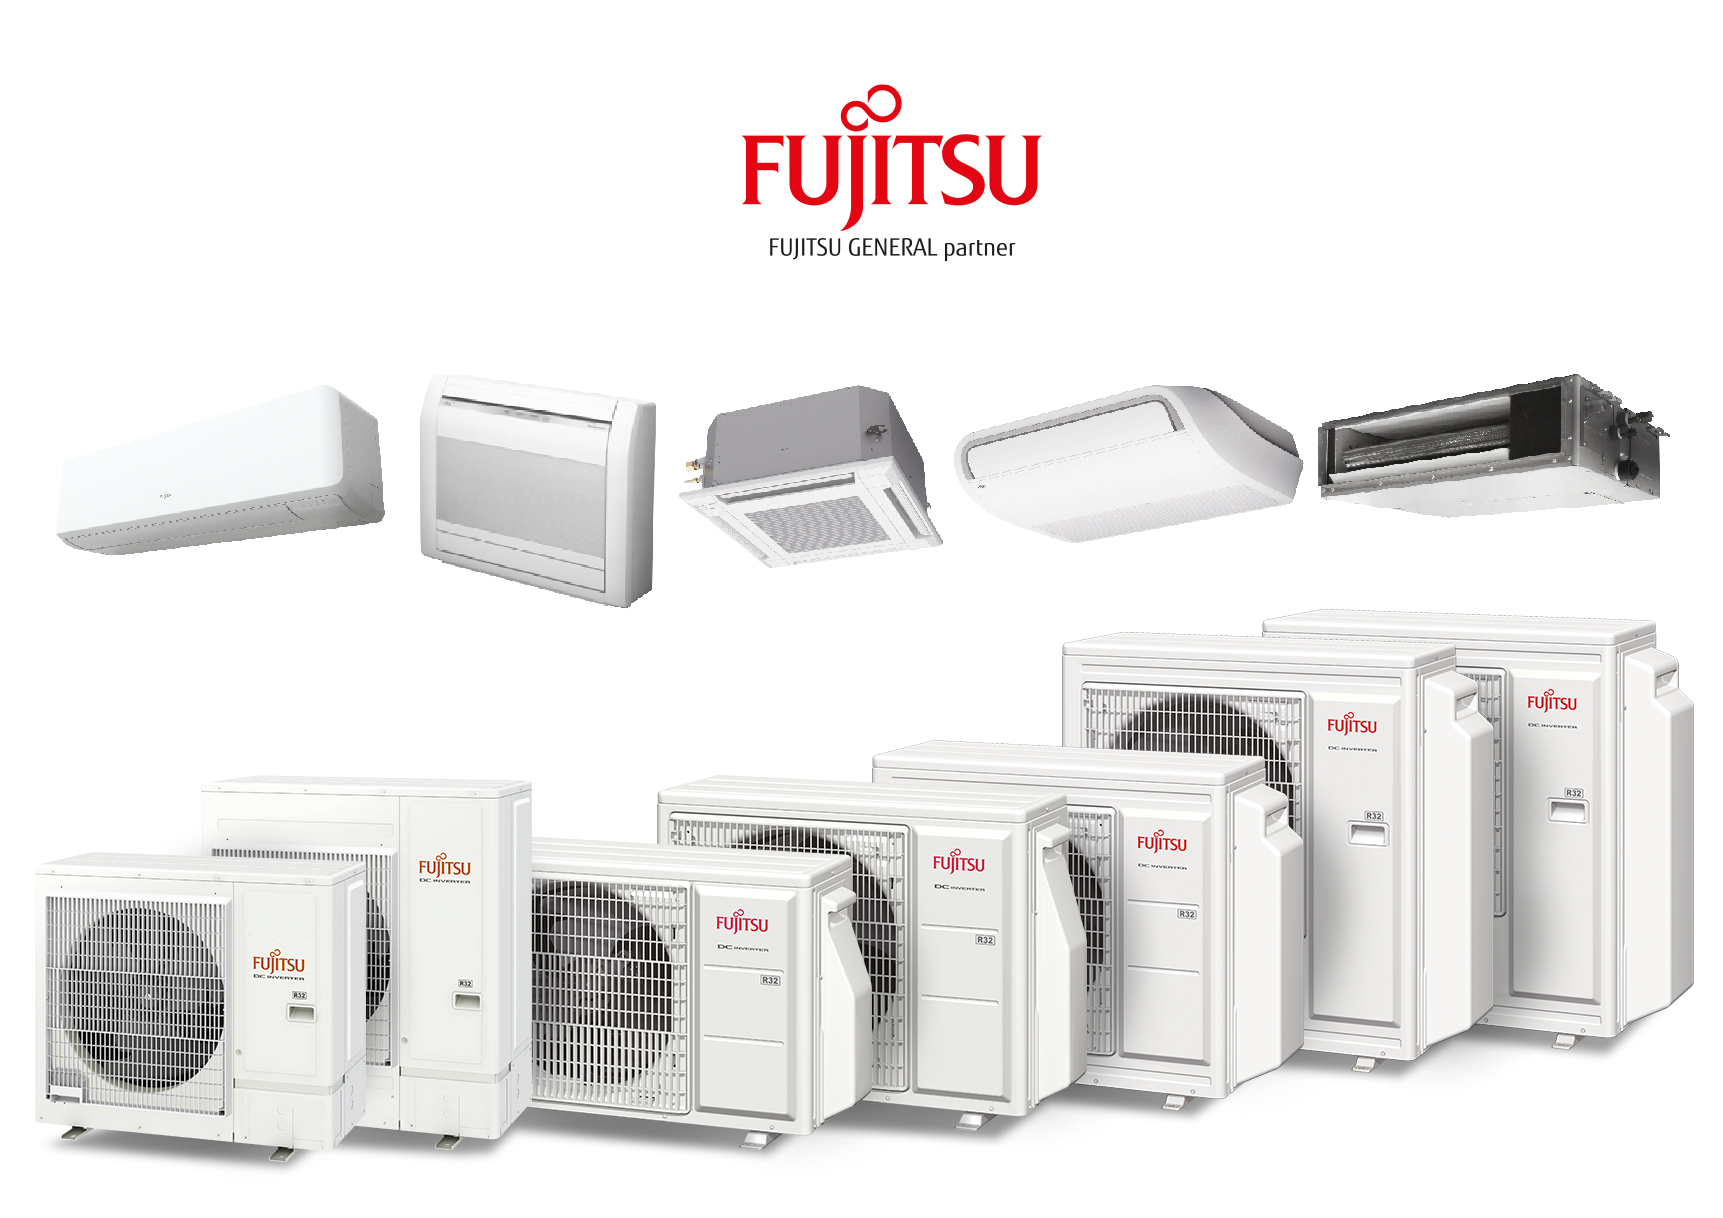 Eurofred garante climatização uniforme e sustentável em aplicações residenciais e comerciais com a série Multisplit R32 da Fujitsu